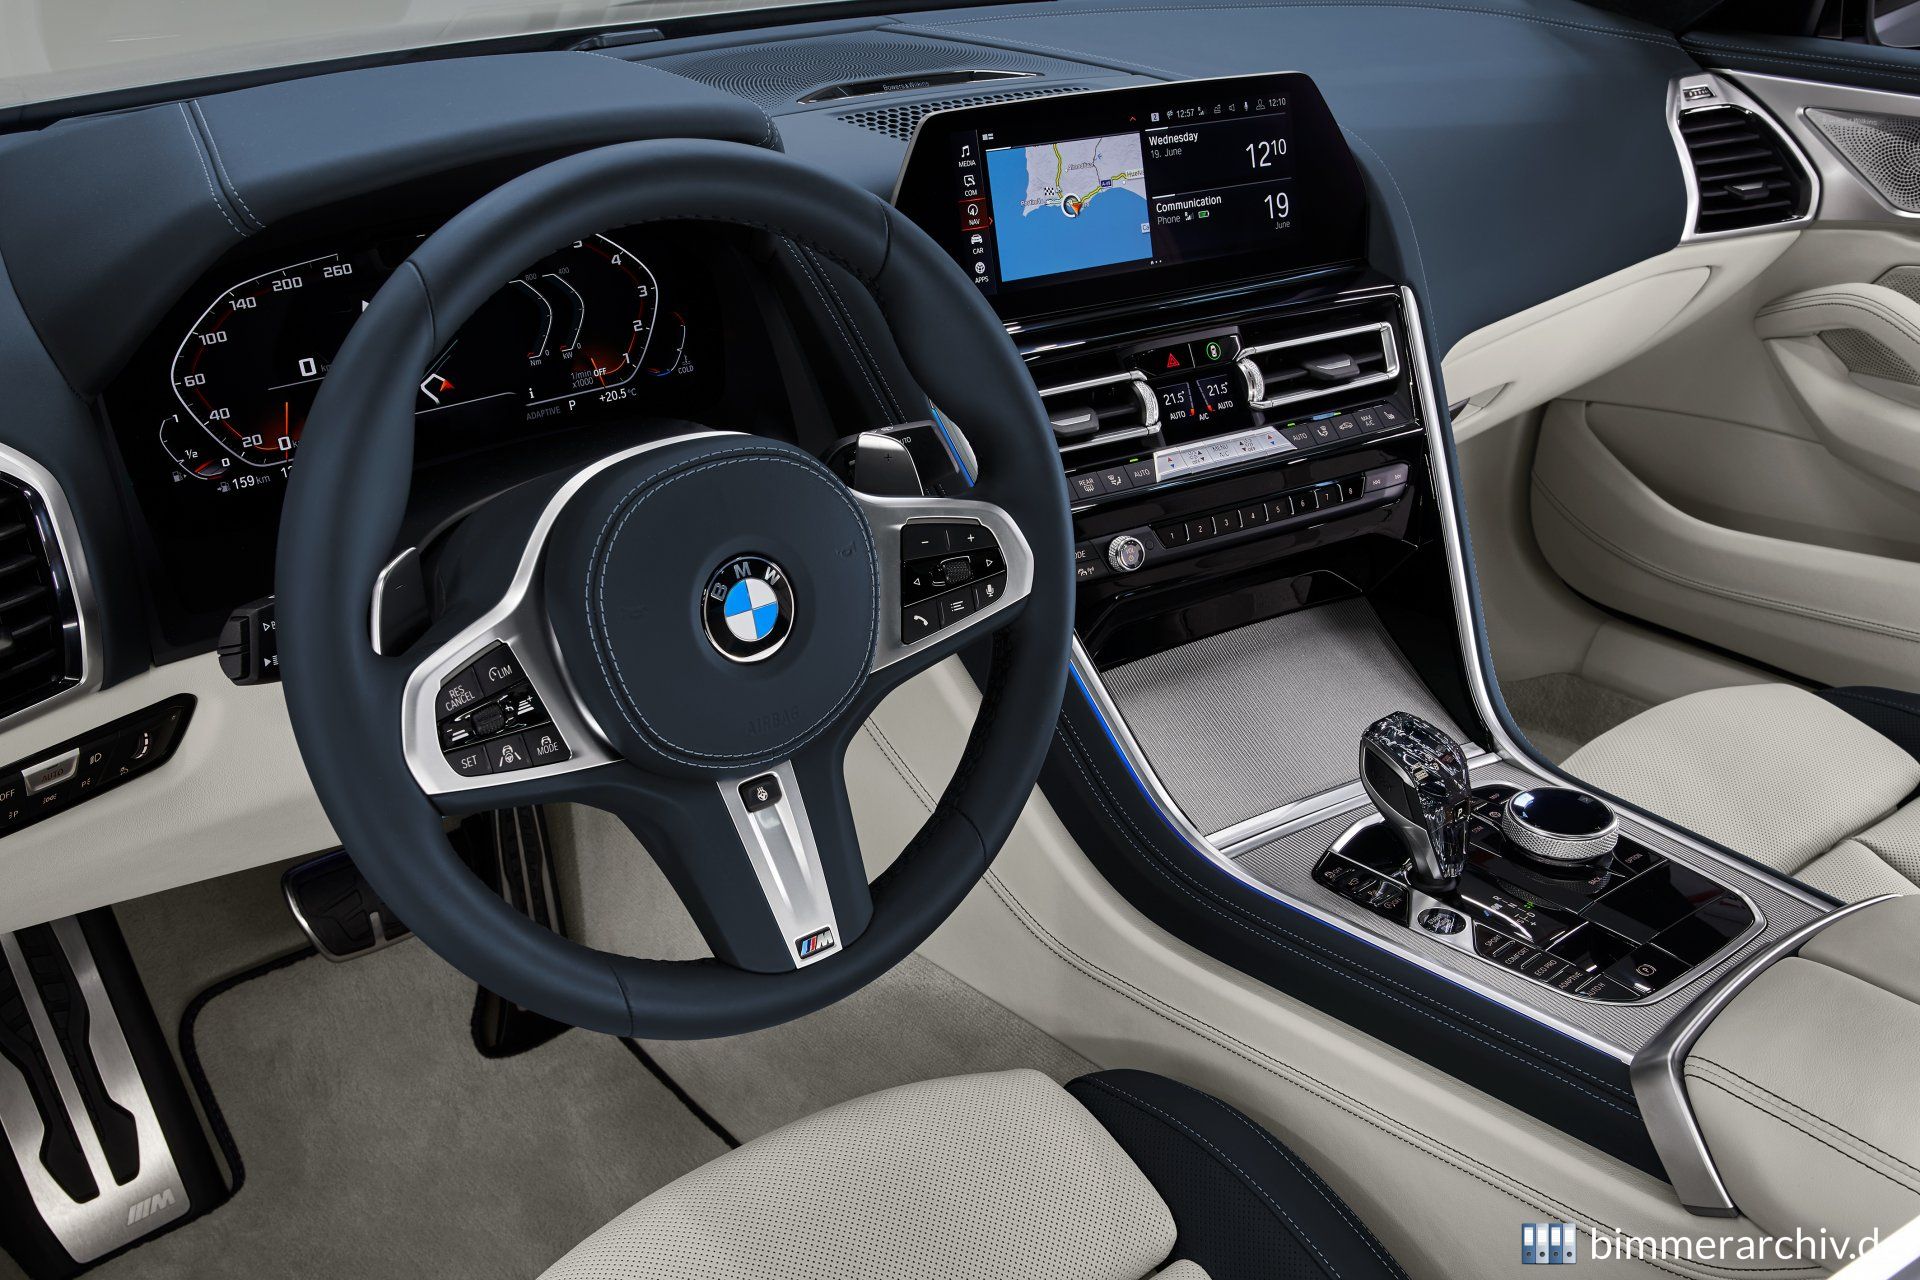 BMW M850i xDrive Gran Coupé